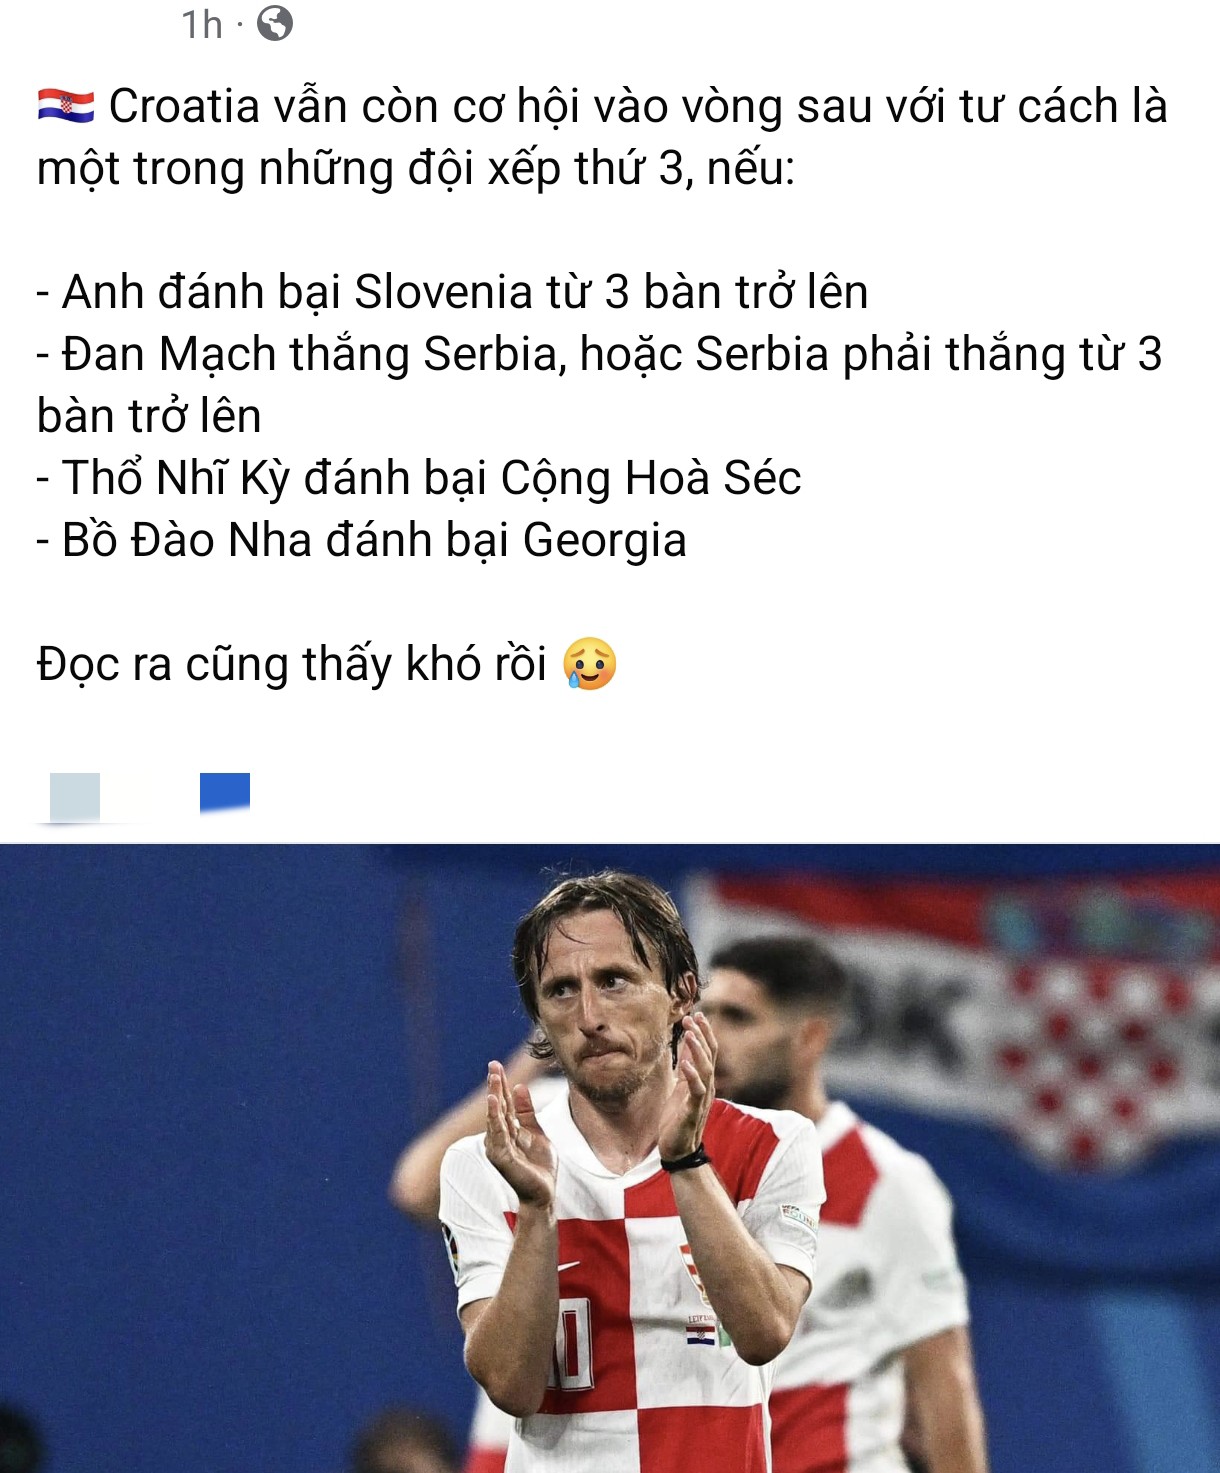 Dù mong manh nhưng cộng đồng mạng vẫn mong chờ một phép nàu cho đội tuyển Croatia cũng như Luka Modric và các đồng đội.